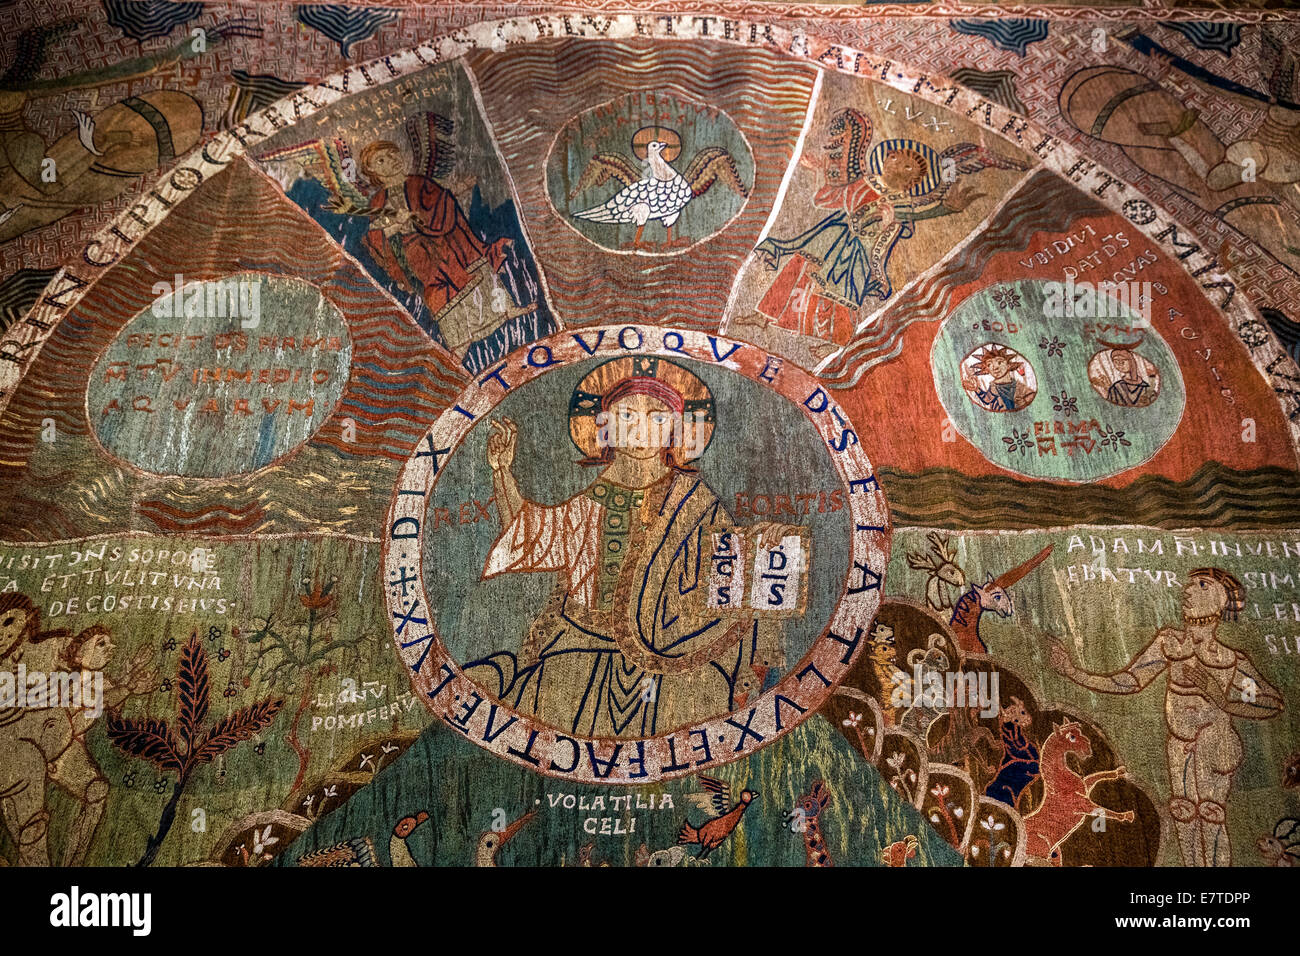 Tapis de la creació, el Tapiz de la creación o Girona Tapestry, siglo XI, Cristo Pantocrátor en el centro, la catedral de Girona, Foto de stock